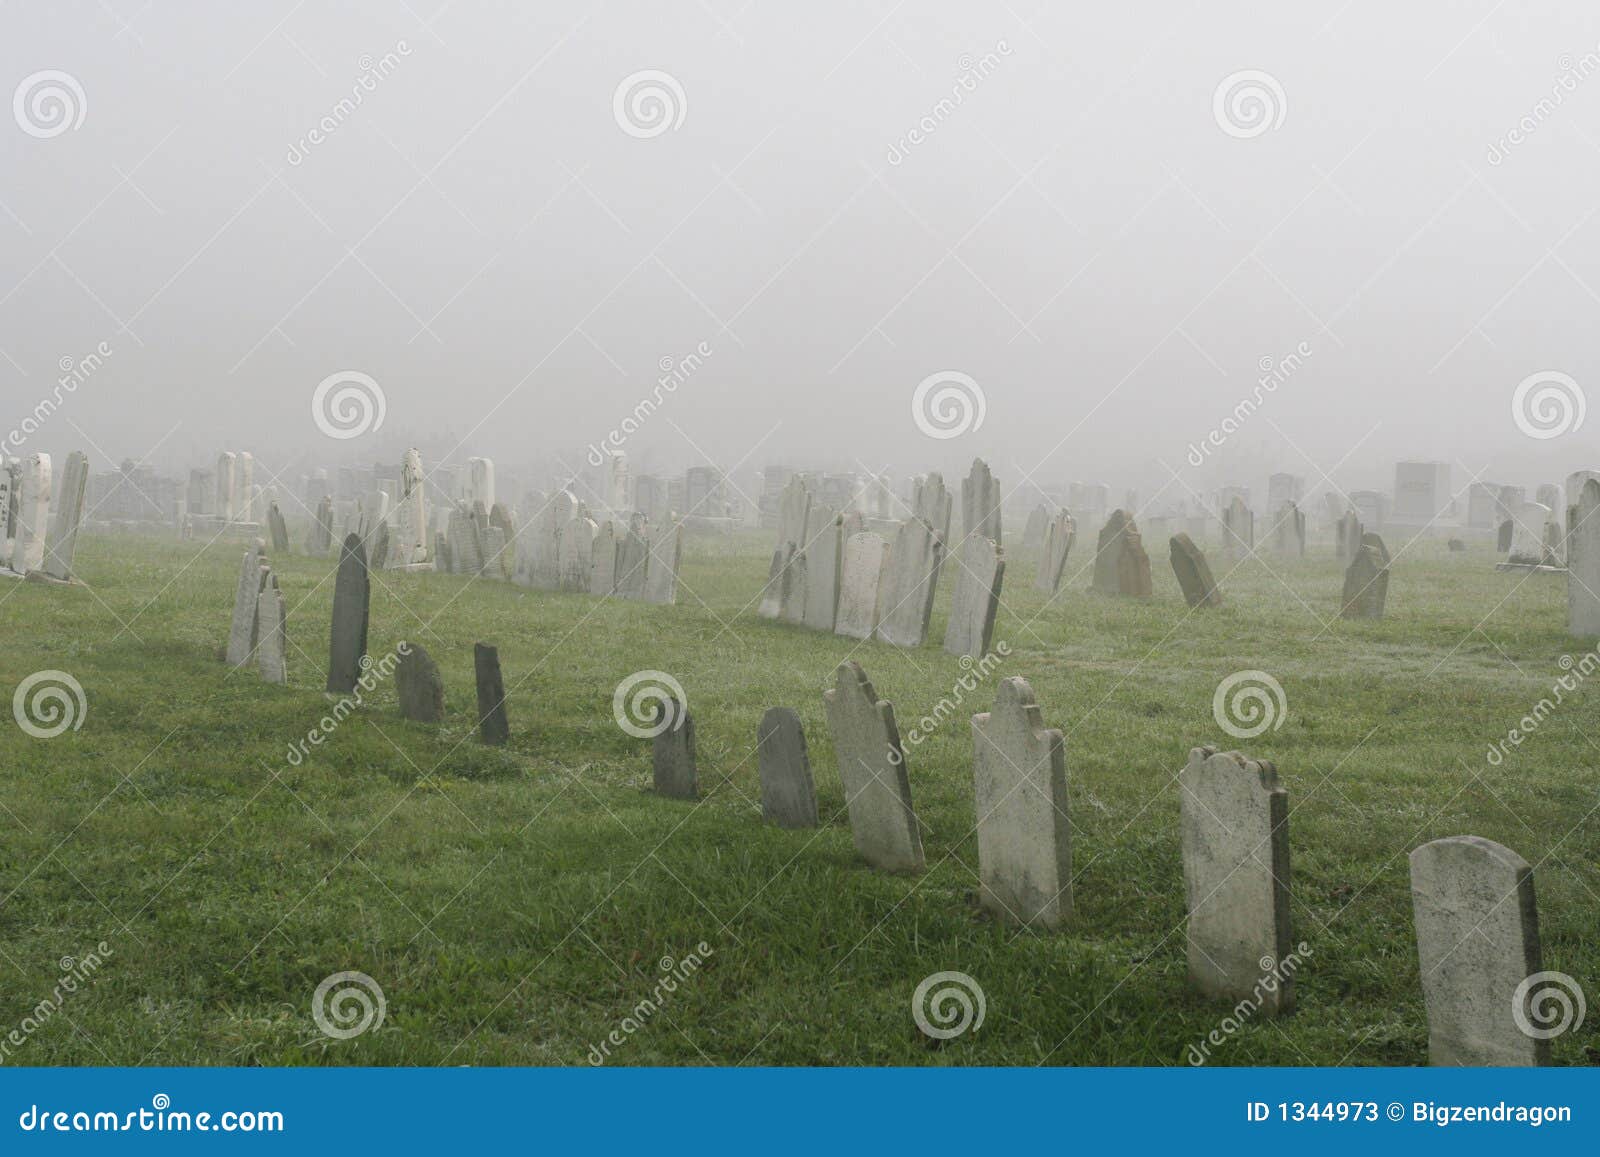 misty graveyard